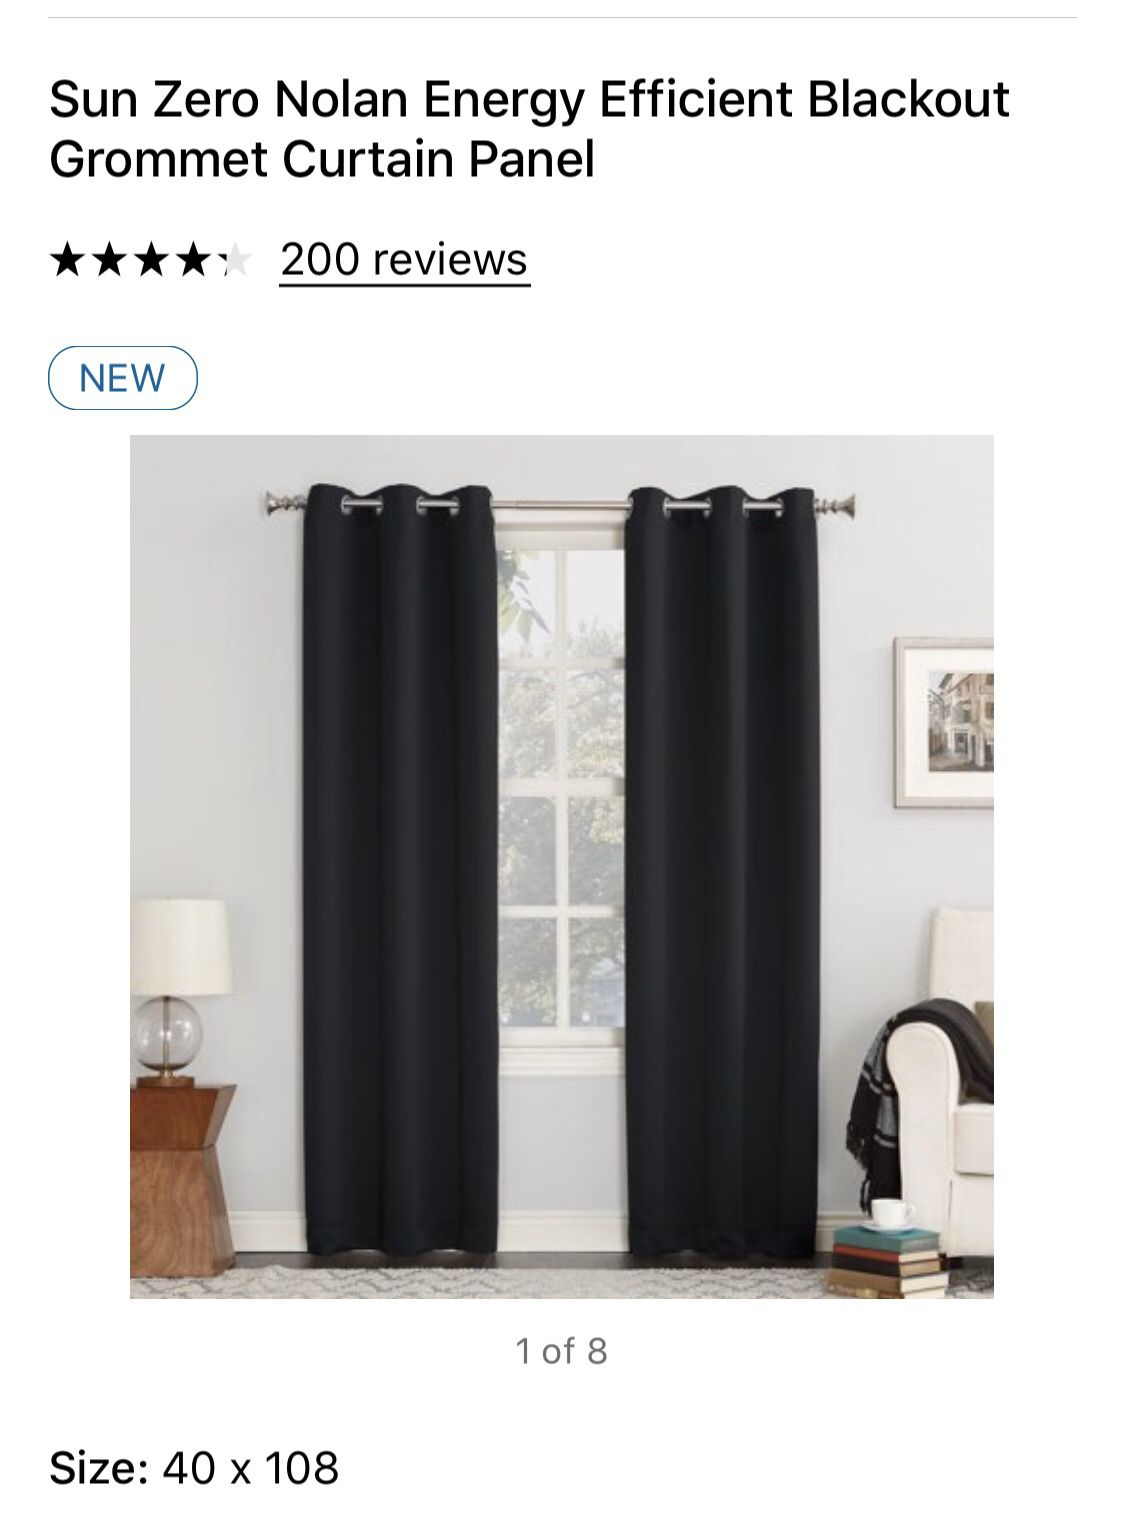 Blackout Grommet Curtain Panels- Black